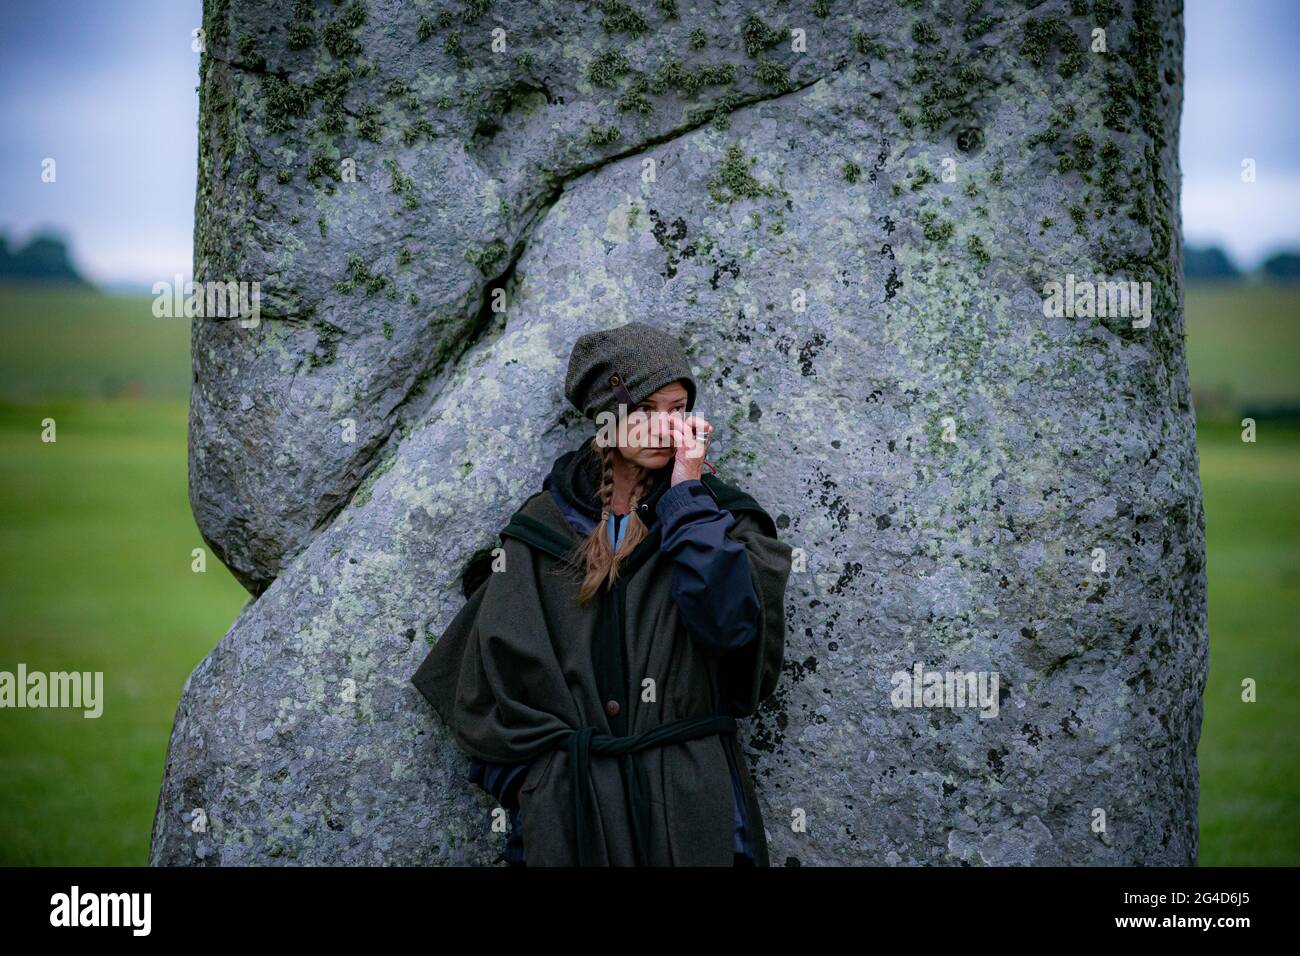 Während der Sommersonnenwende in Stonehenge steht eine Frau neben einem Stein, wo einige Leute über den Zaun sprangen, um den Platz zu betreten und den Sonnenaufgang am längsten Tag in Großbritannien zu beobachten. Die Steine wurden für die Feierlichkeiten, bei denen große Menschenmengen im Kreis zu sehen sind, aufgrund der Coronavirus-Lockdown-Erweiterung offiziell geschlossen. Bilddatum: Montag, 21. Juni 2021. Stockfoto